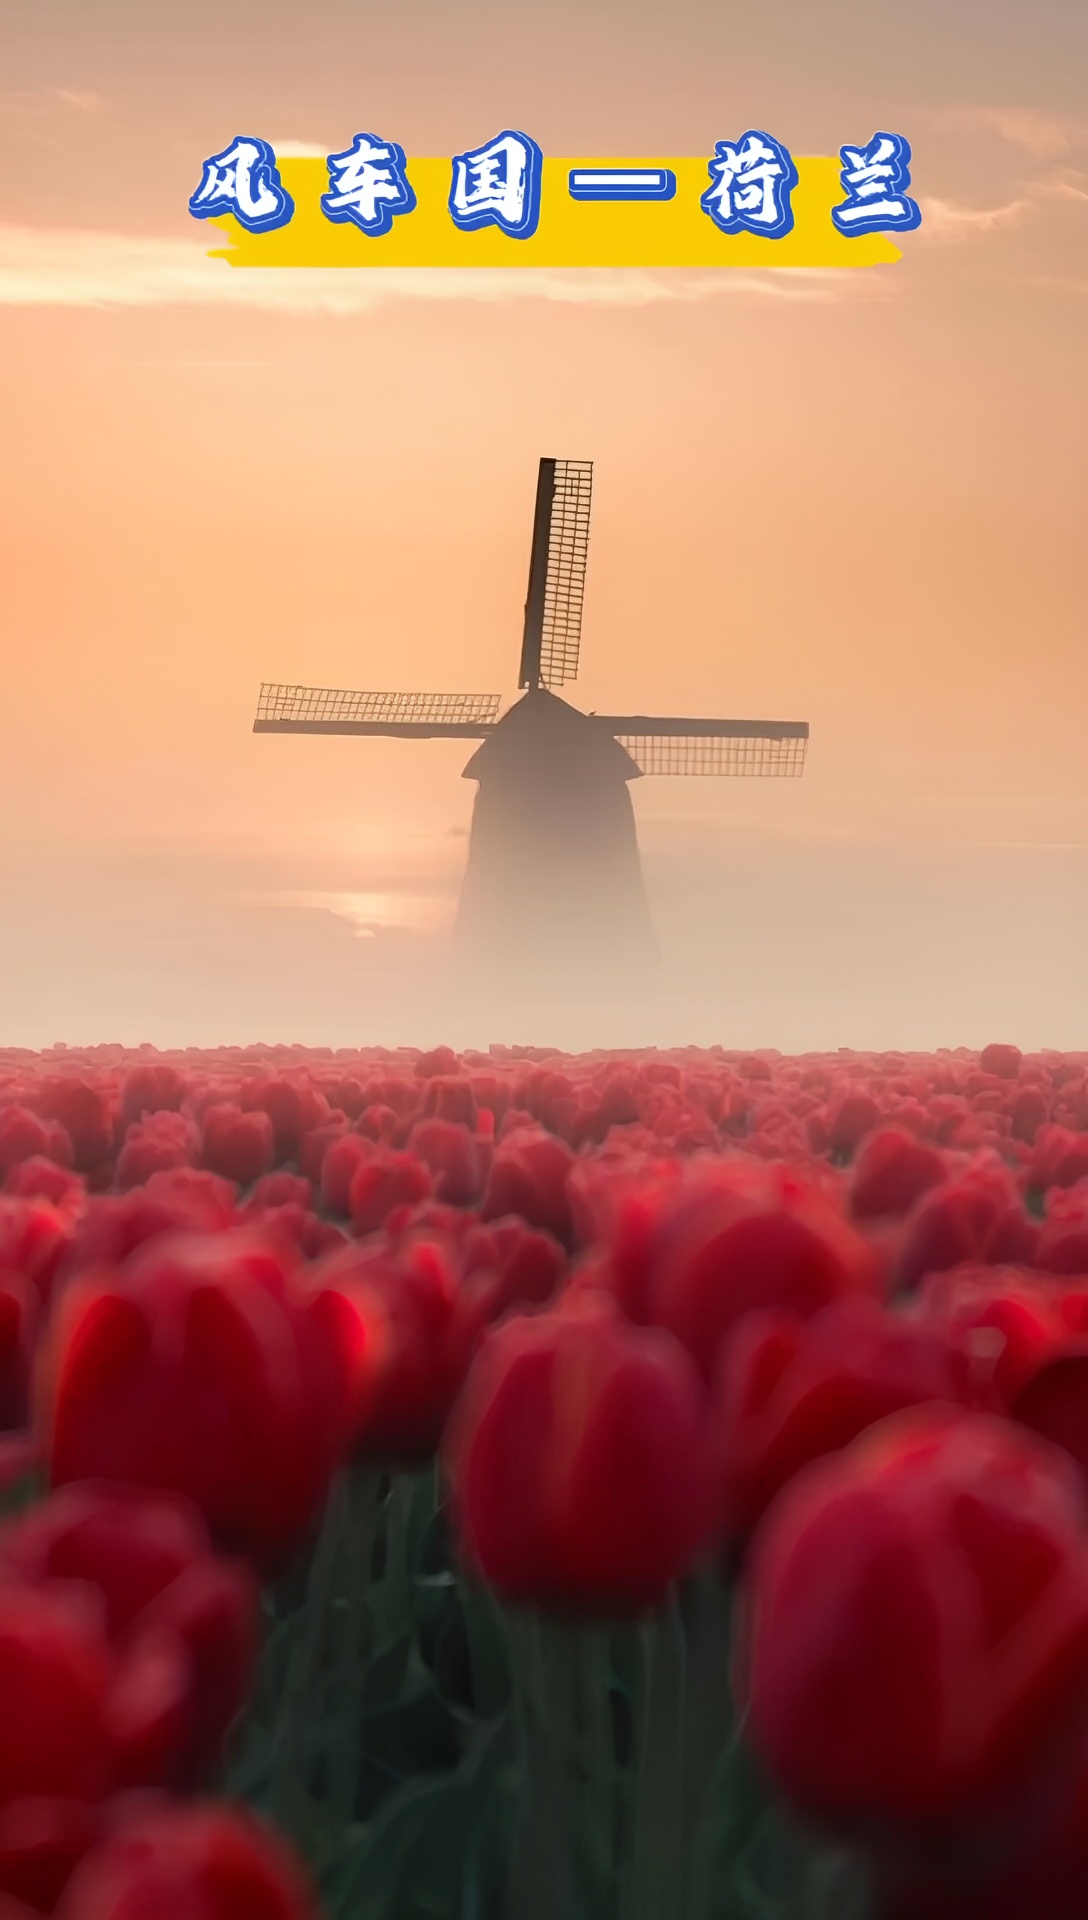 风车国——🇳🇱荷兰